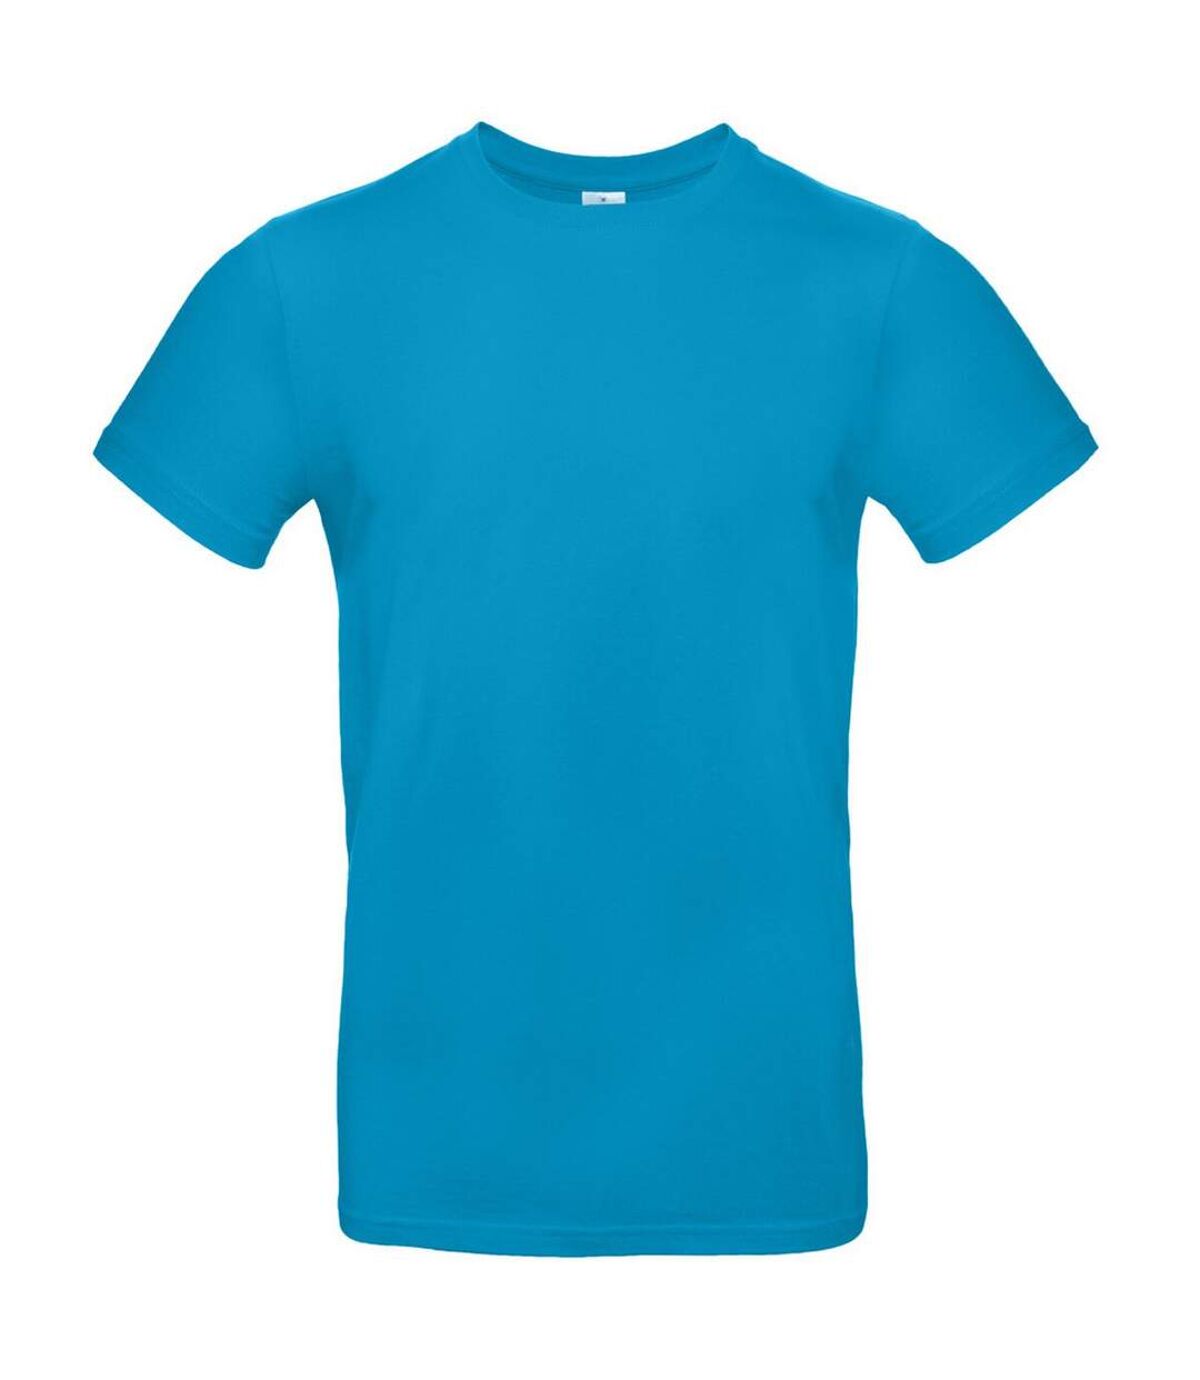 B&C - T-shirt manches courtes - Homme (Azur) - UTBC3911